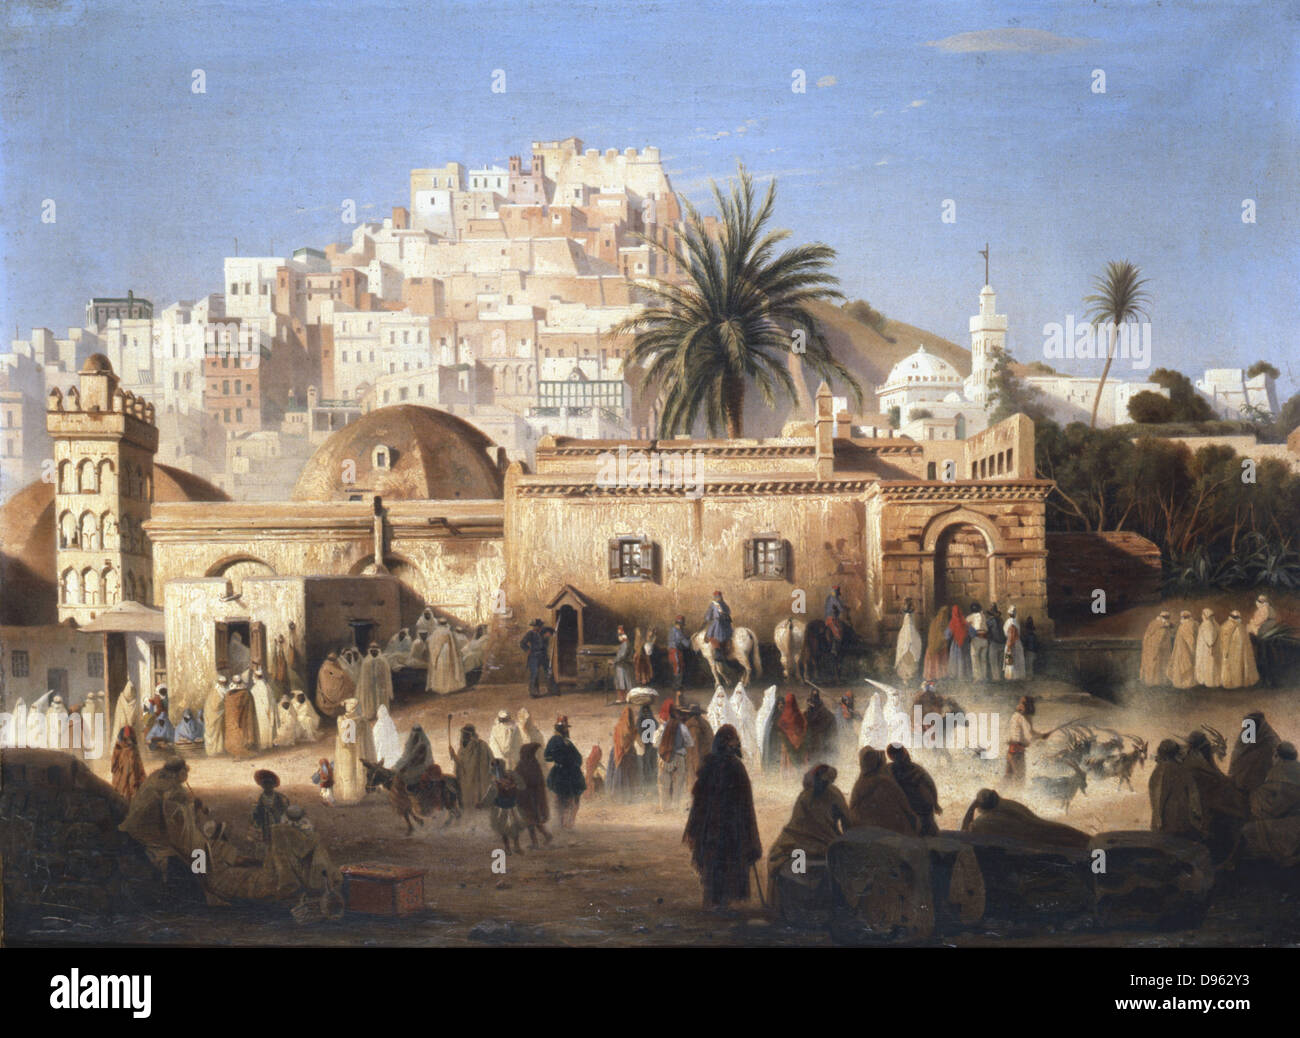 Bin osque von El Mecolla, Algier'. Die Moschee ciewed von der geschäftigen Straße. Antoine Victor Edmond Joinville (1801-1849), französischer Maler. Private Sammlung. Stockfoto